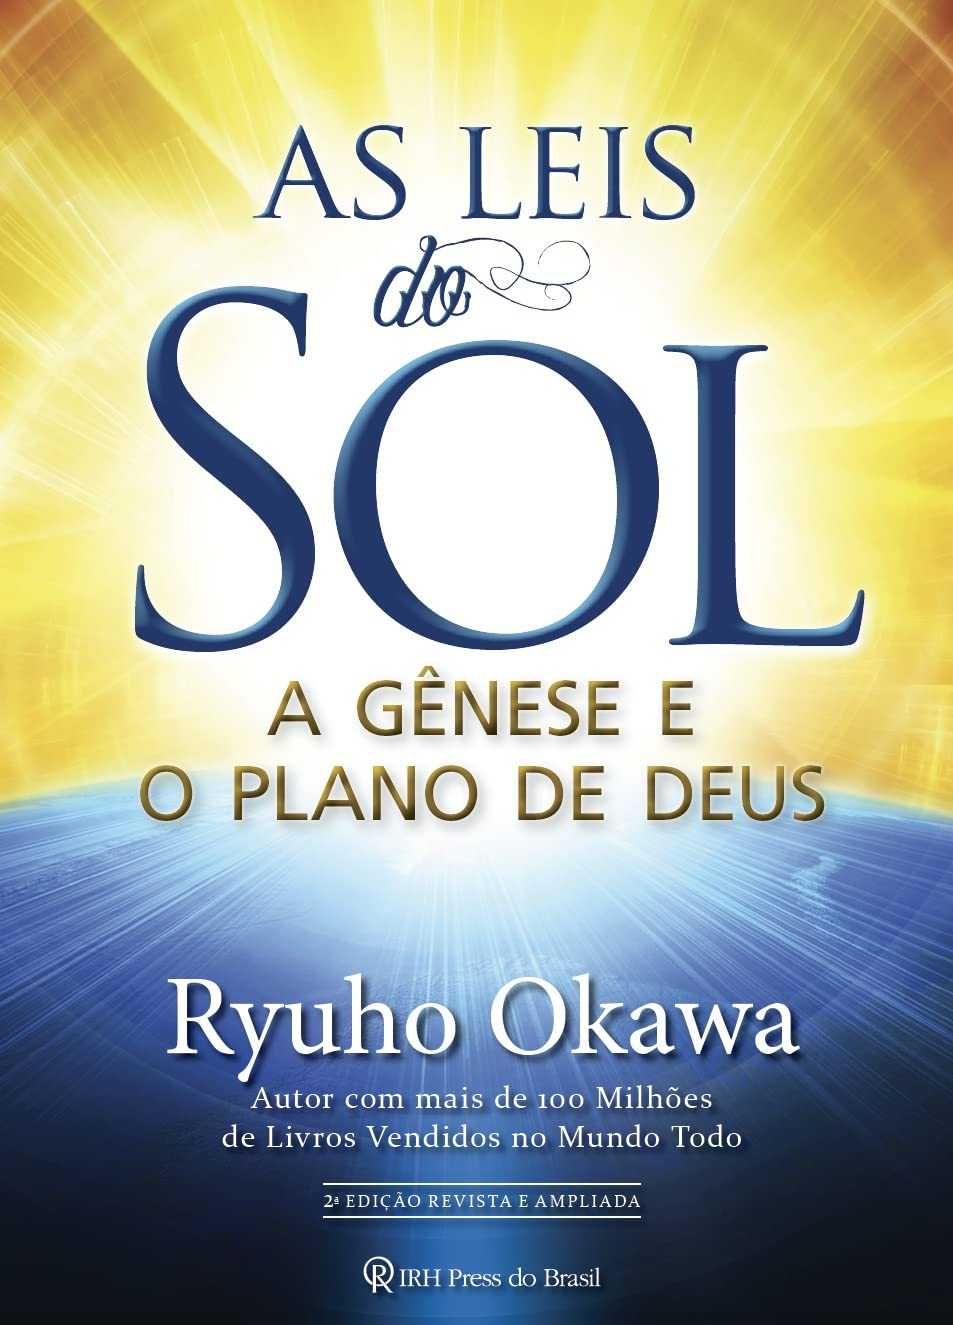 Ryuho Okawa, Clarissa P. Estés, R. Tagore - Obras de espiritualidade